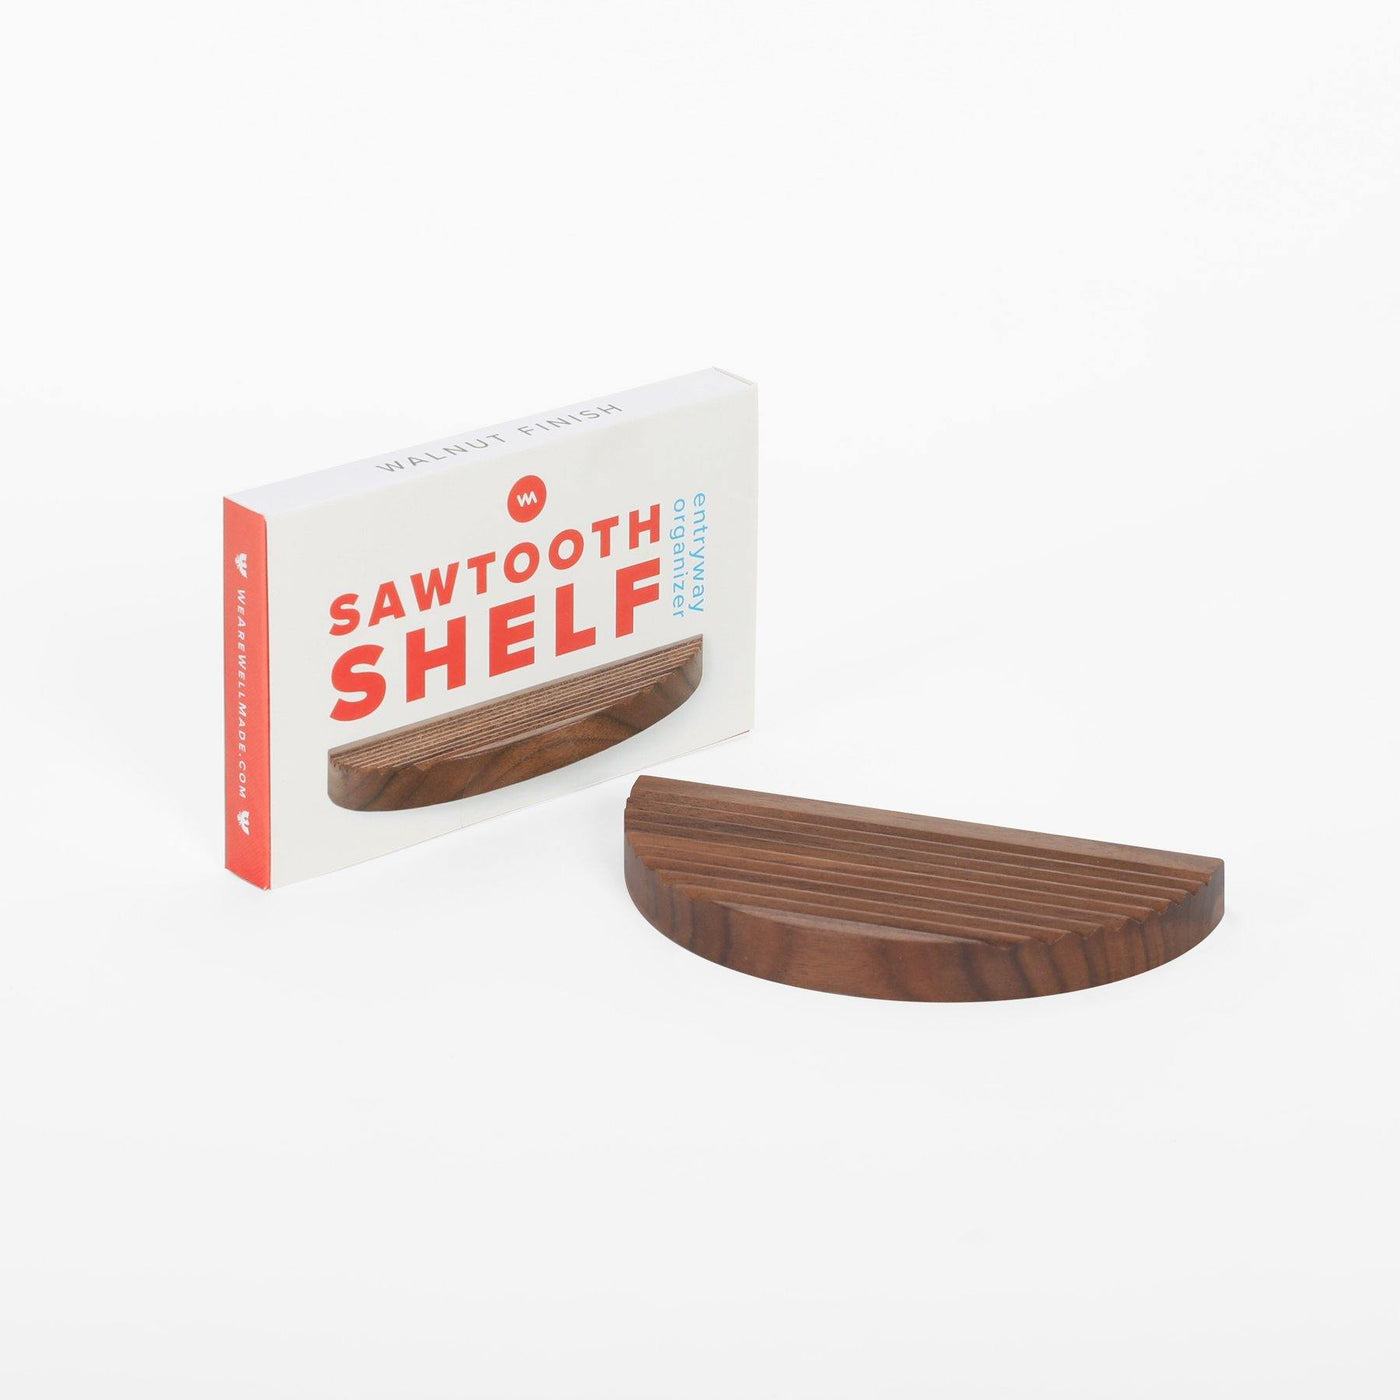 Sawtooth Shelf – Entryway Organizer - Well Made